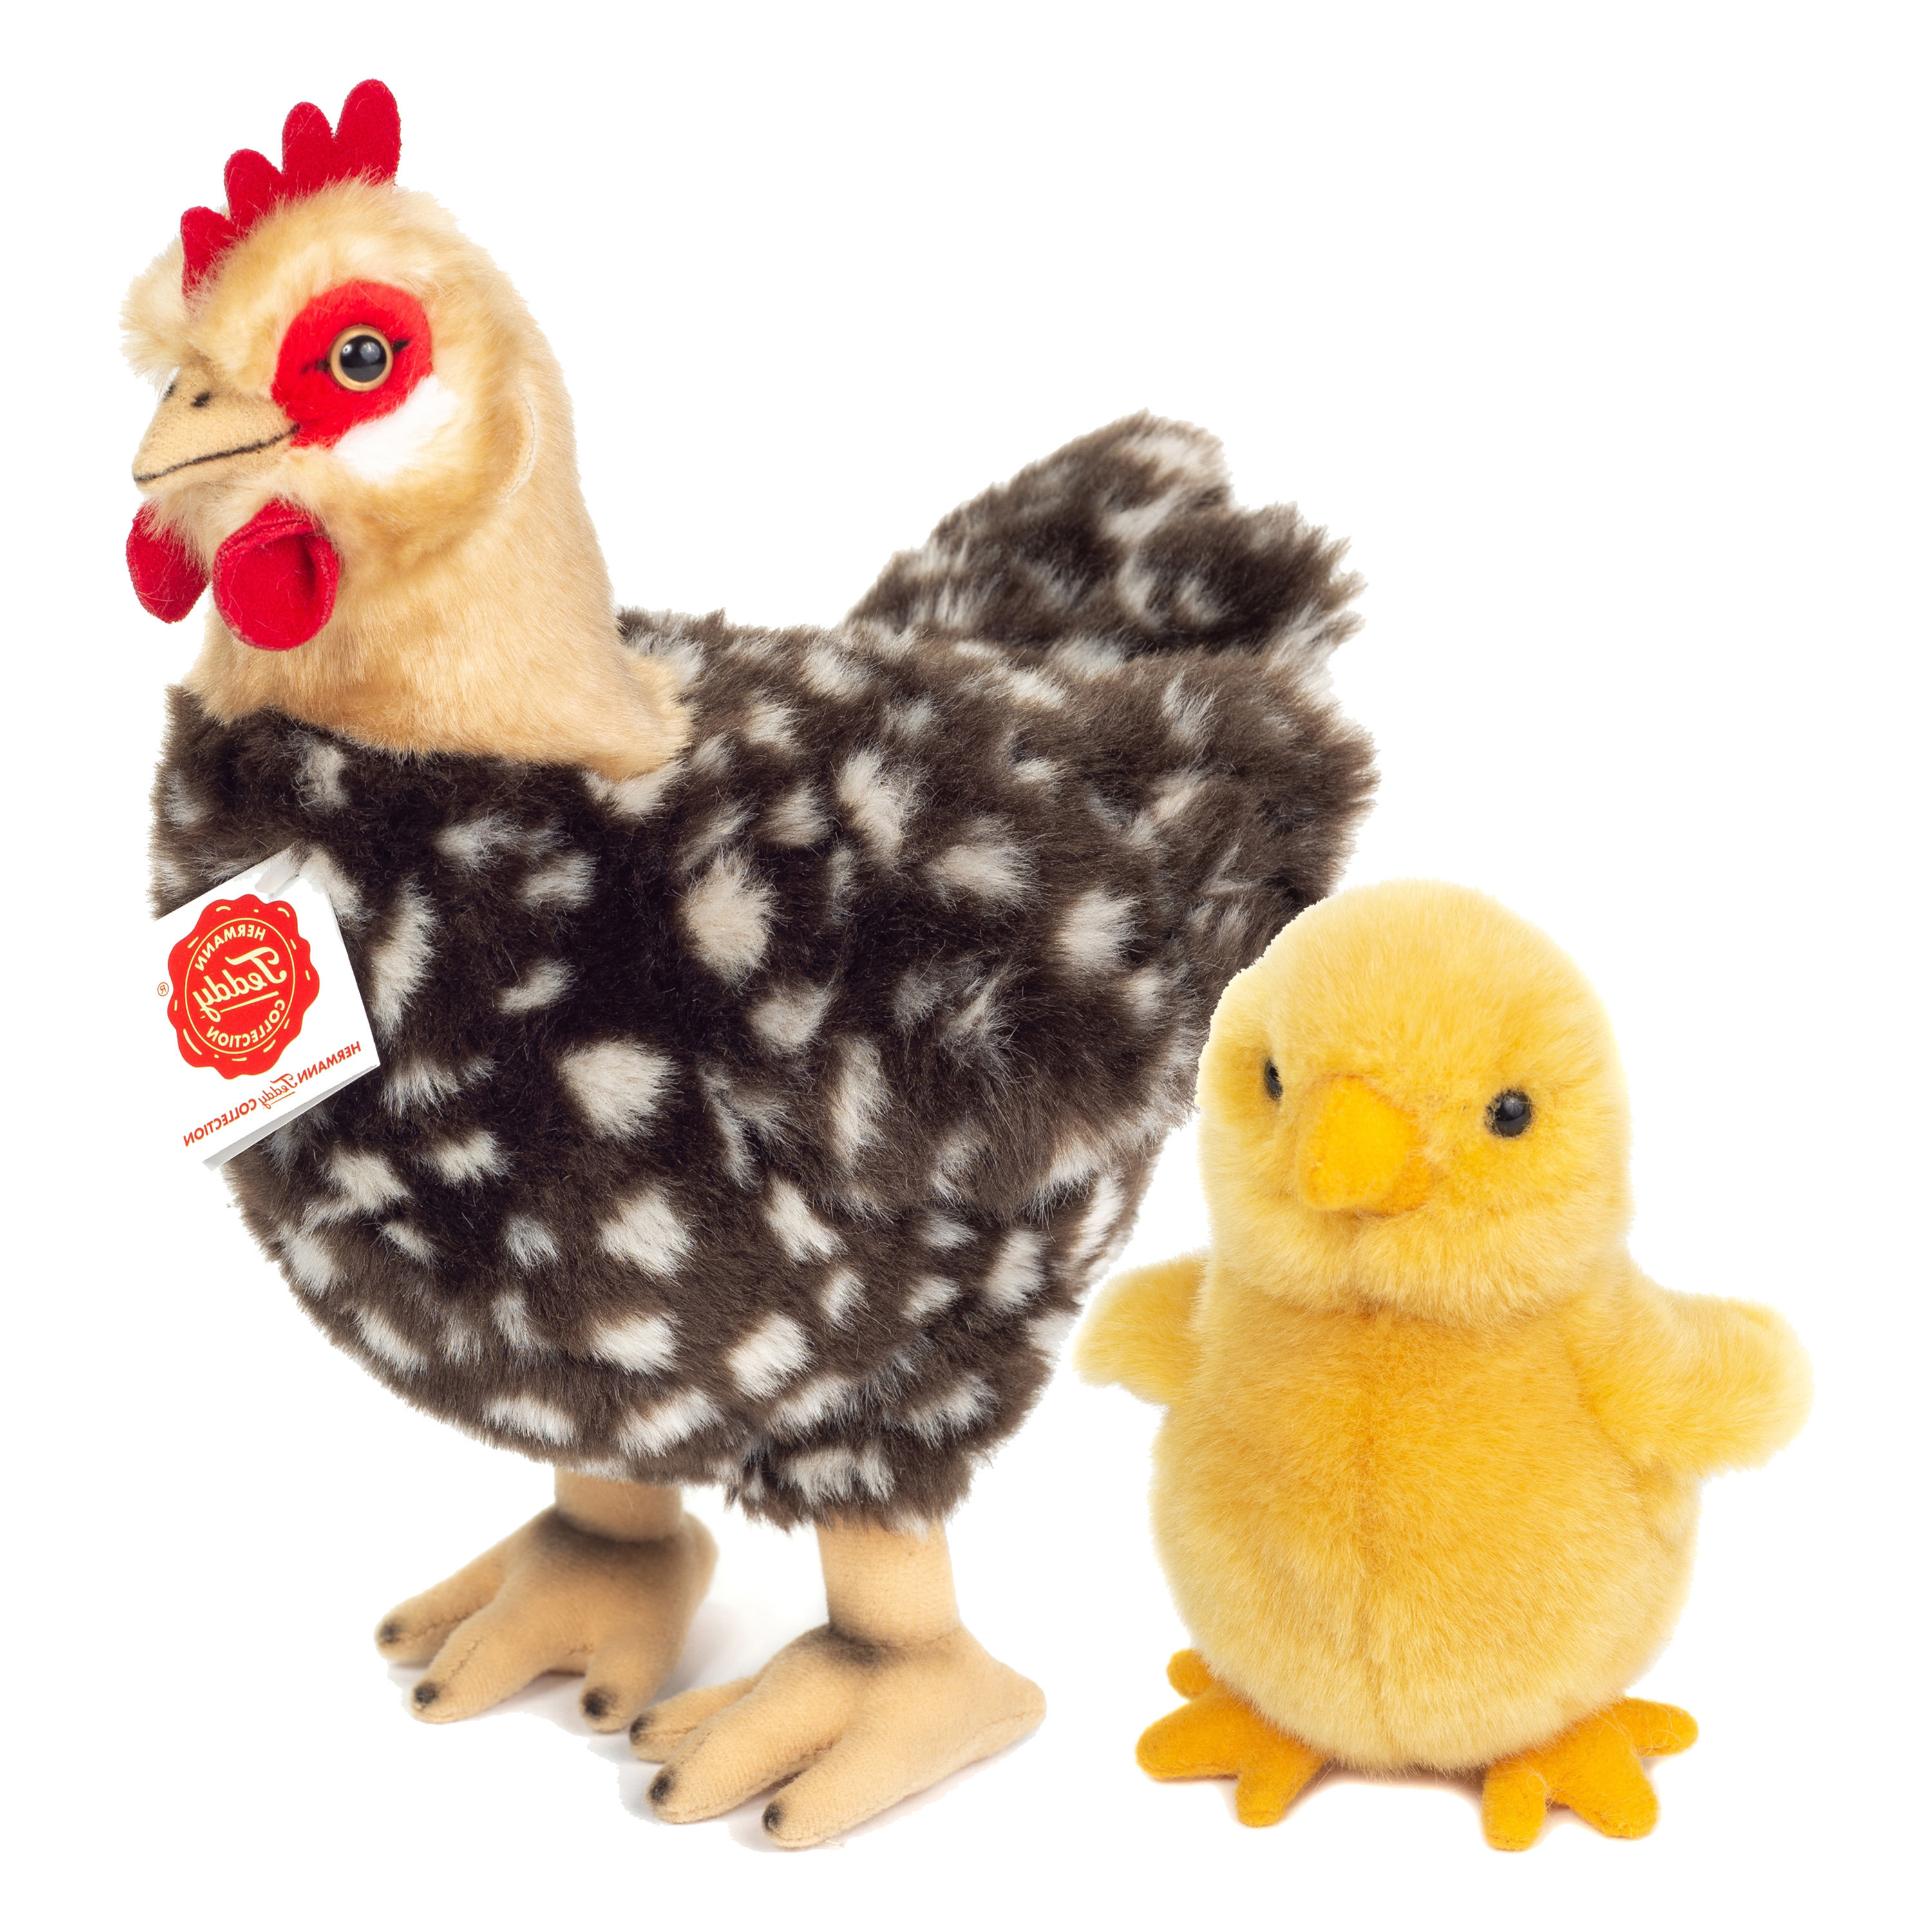 Hermann Teddy Pluche kip knuffel 24 cm multi kleur met een kuiken van 10 cm kippen familie